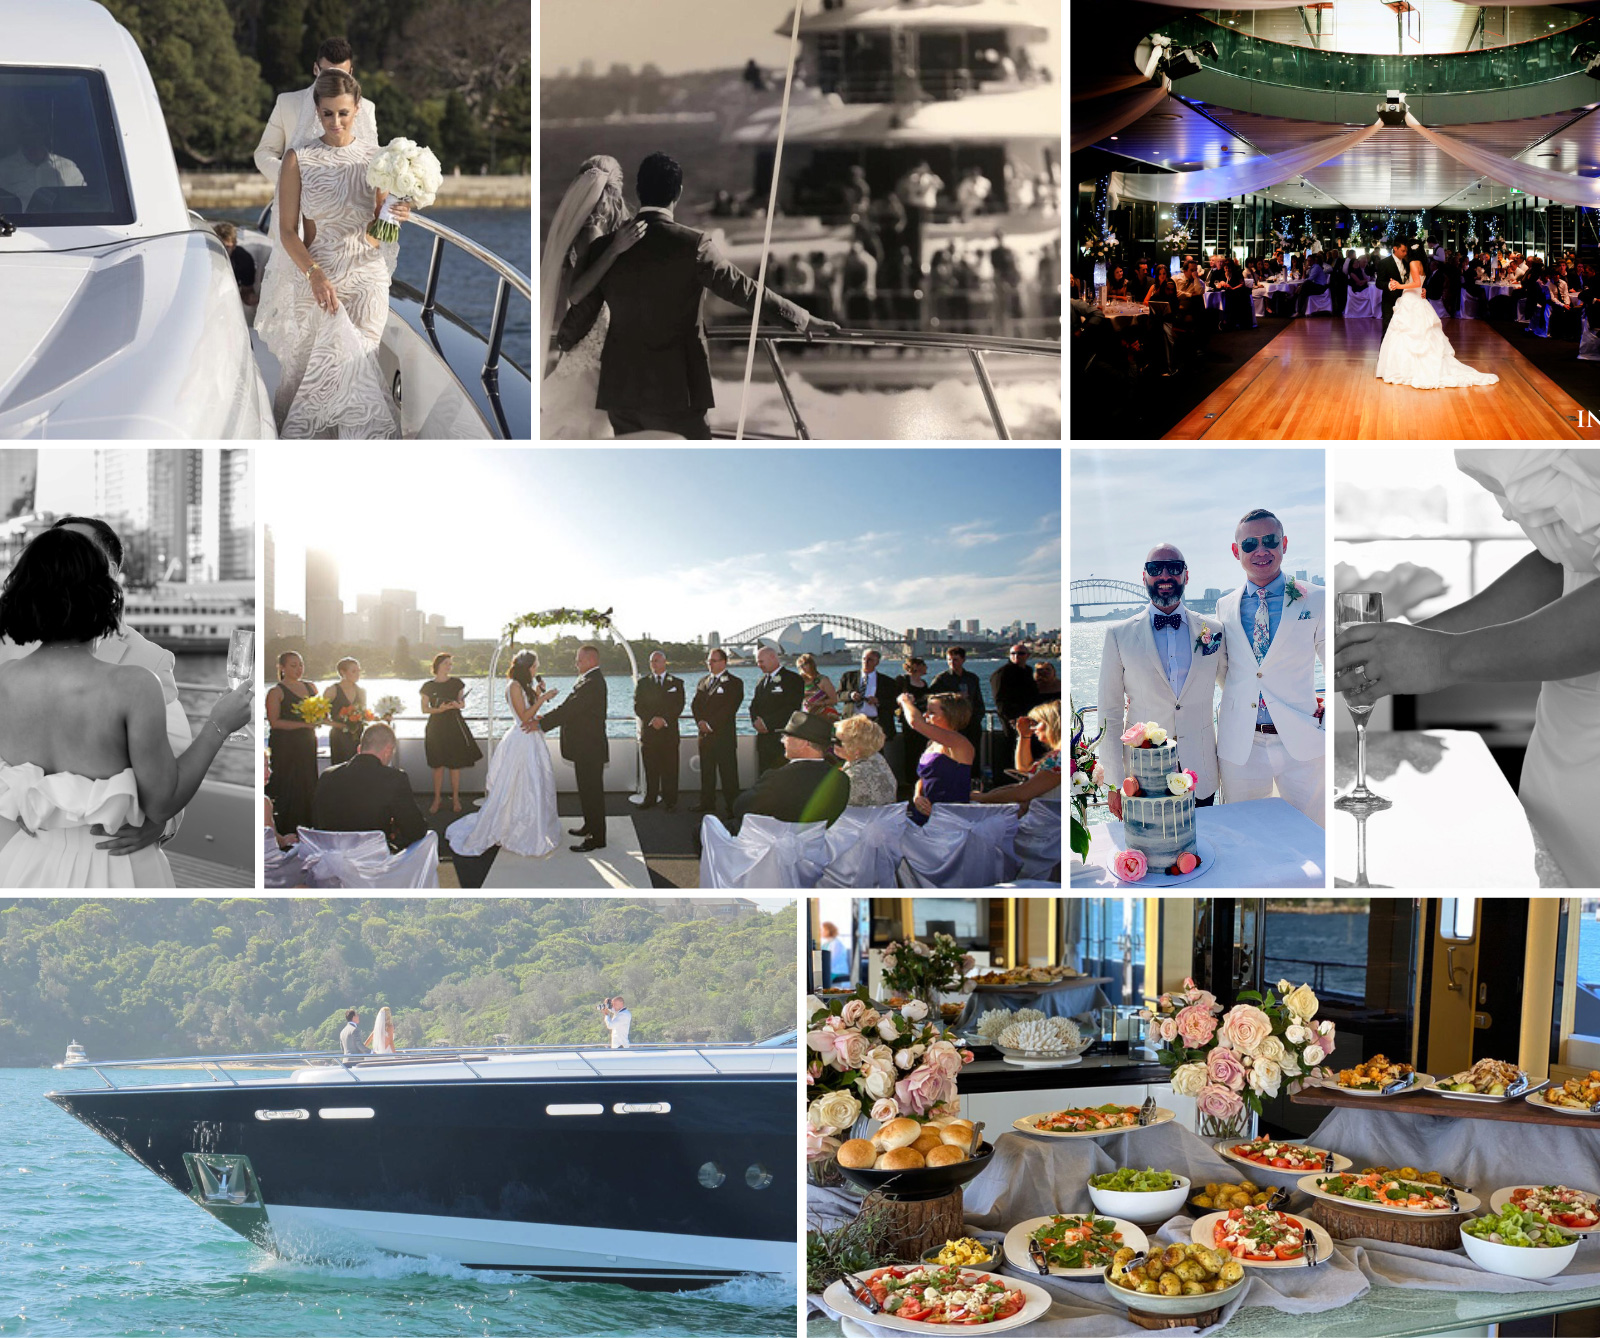 Wedding cruise Sydney boat hire photo collage